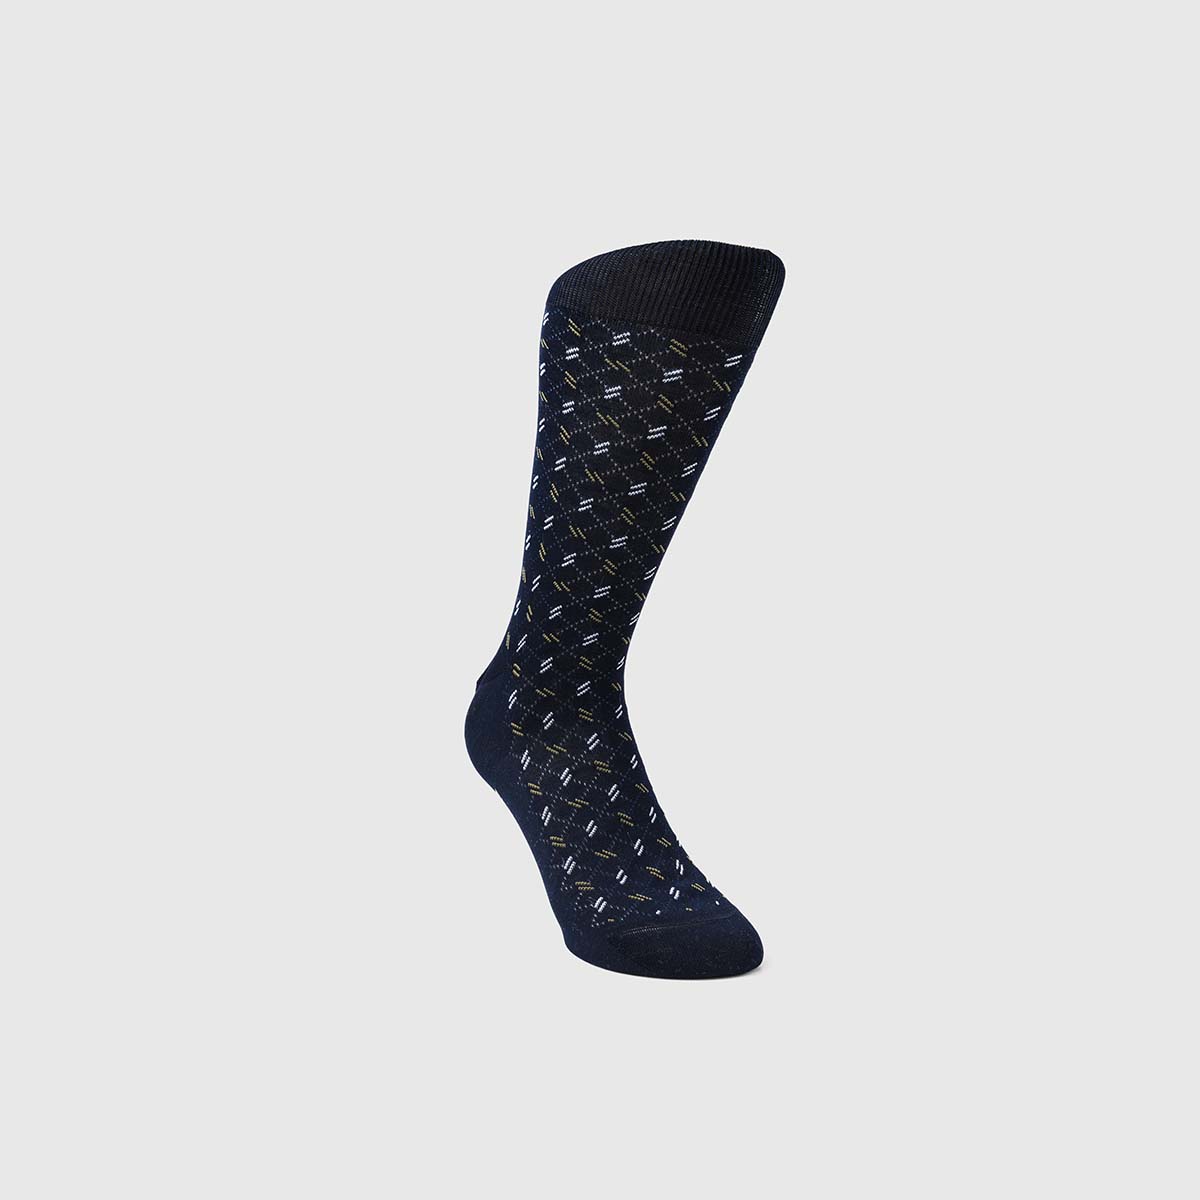 Bresciani 1970 Cotton Socks in Blue & White – M